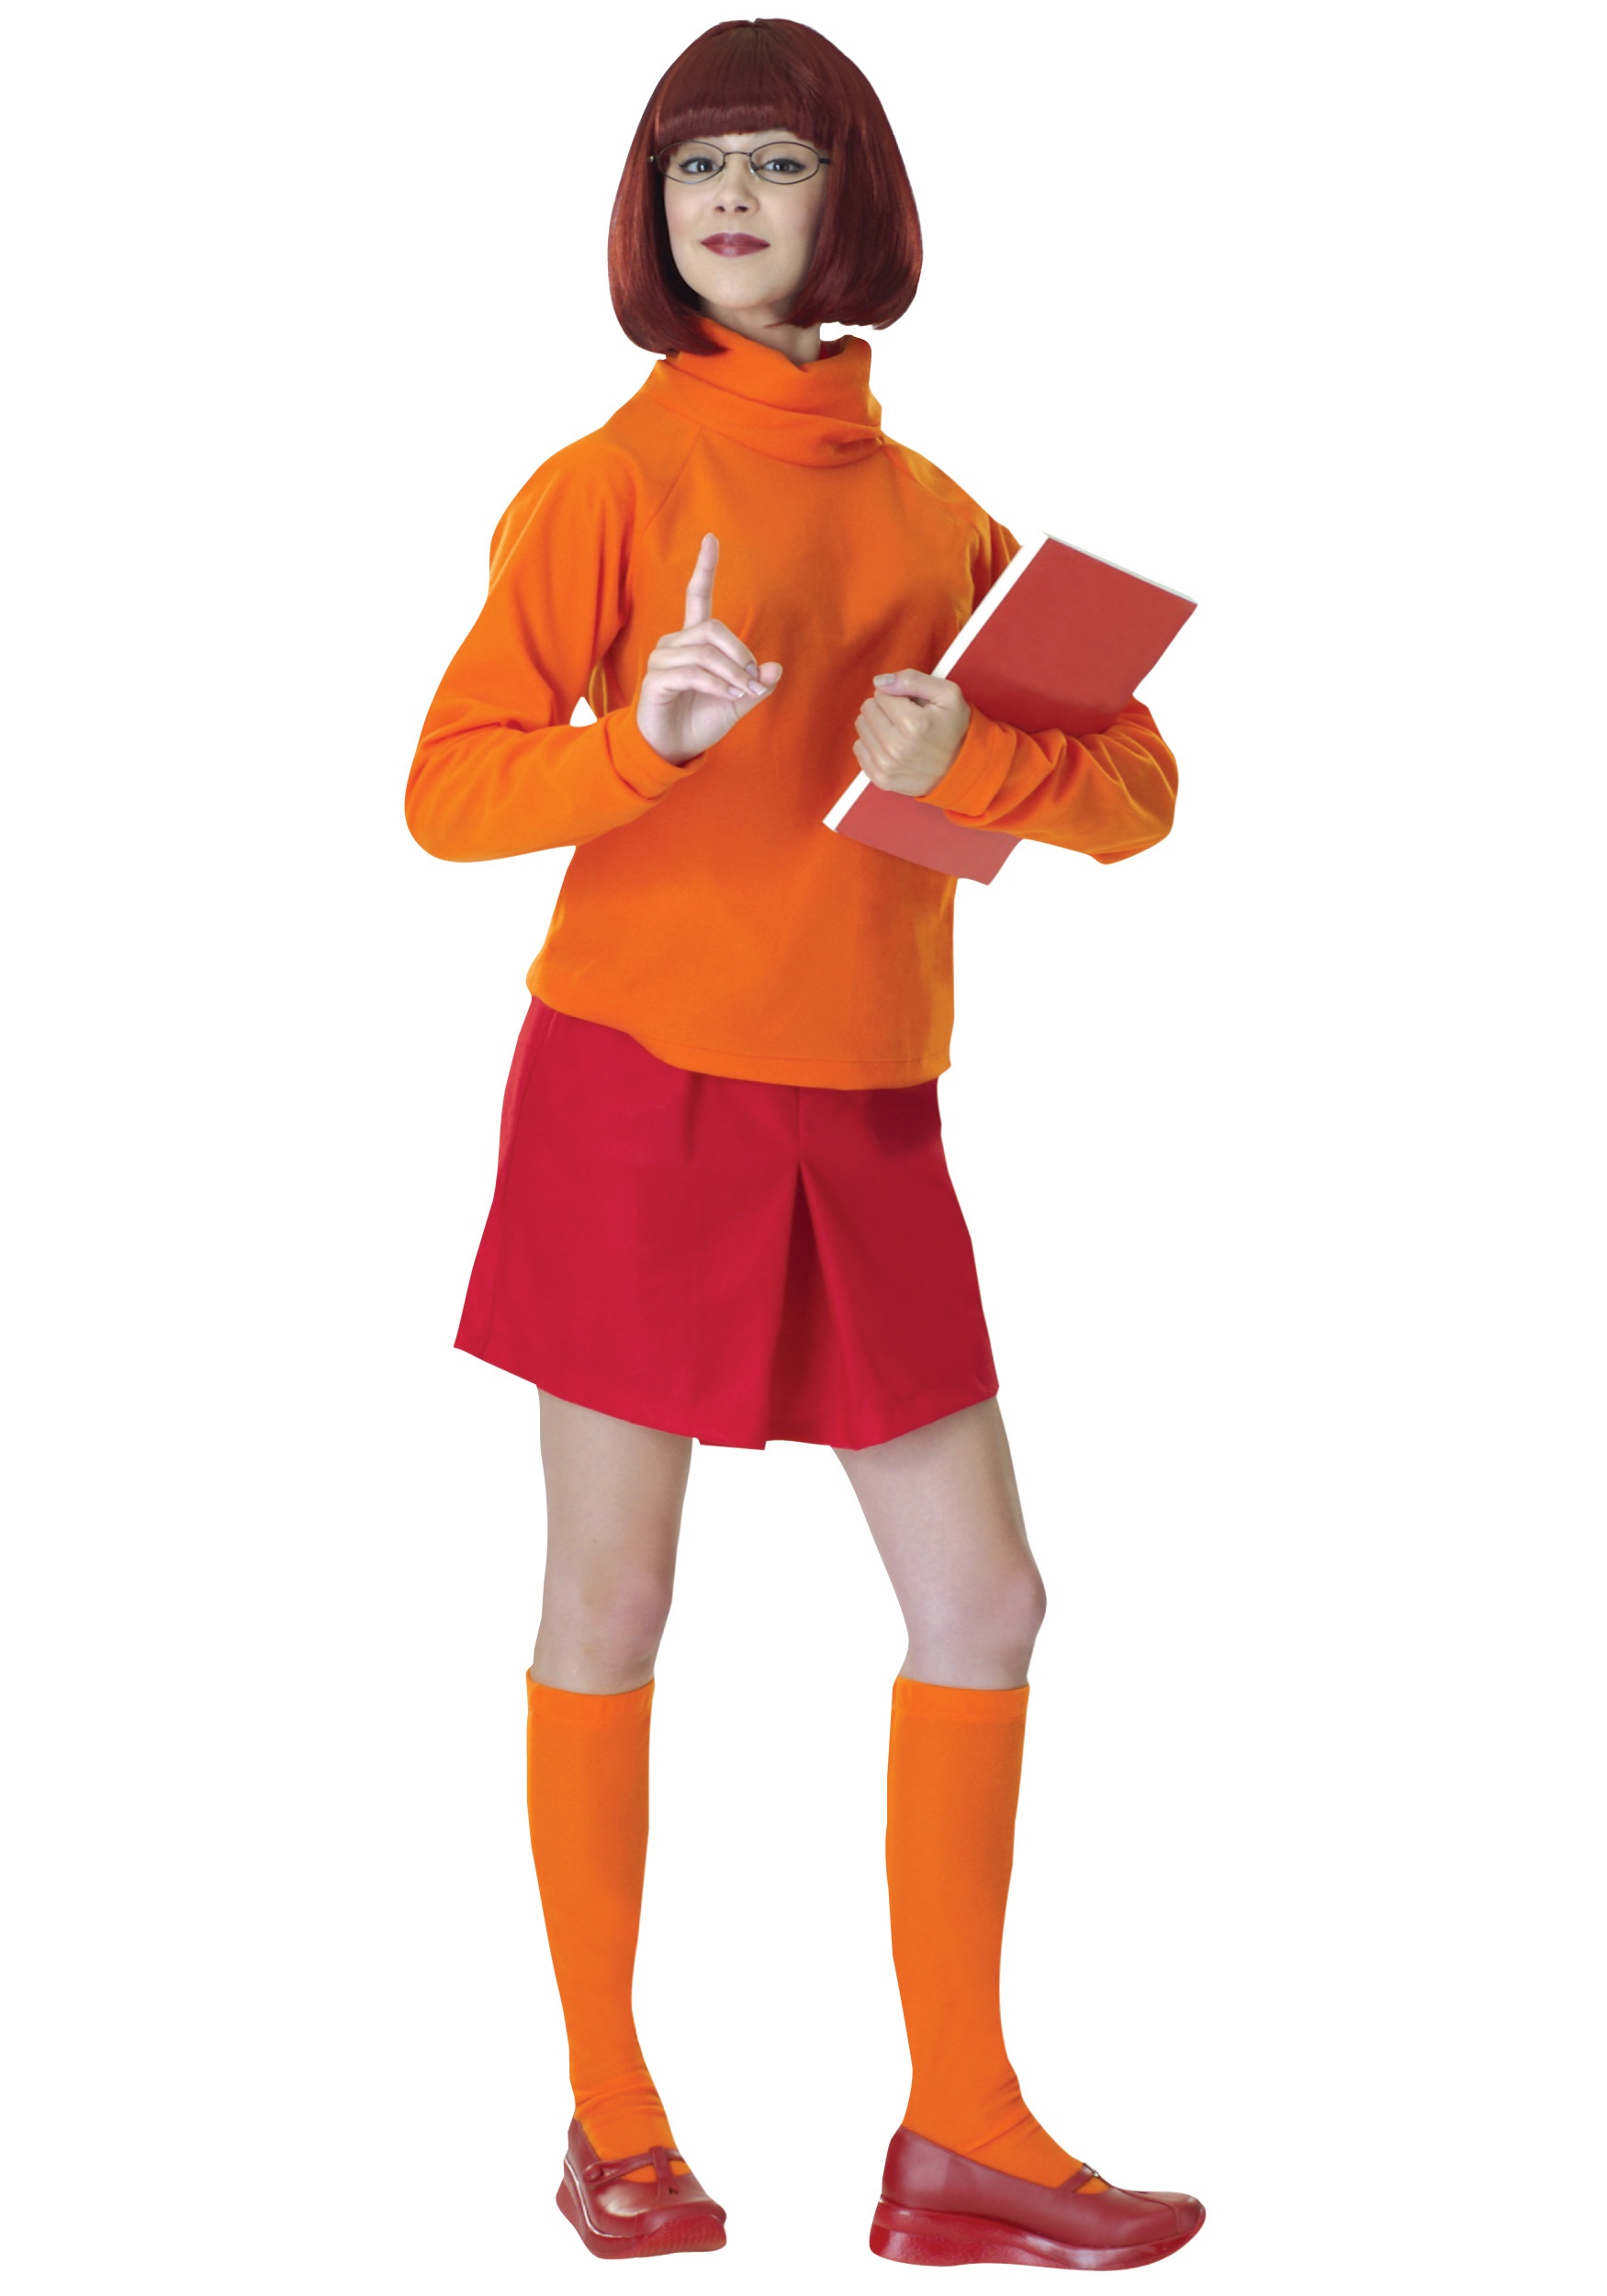 Adult Velma Fancy Dress Costume W/ Wig - Adult Scooby Doo Fancy Dress Costume